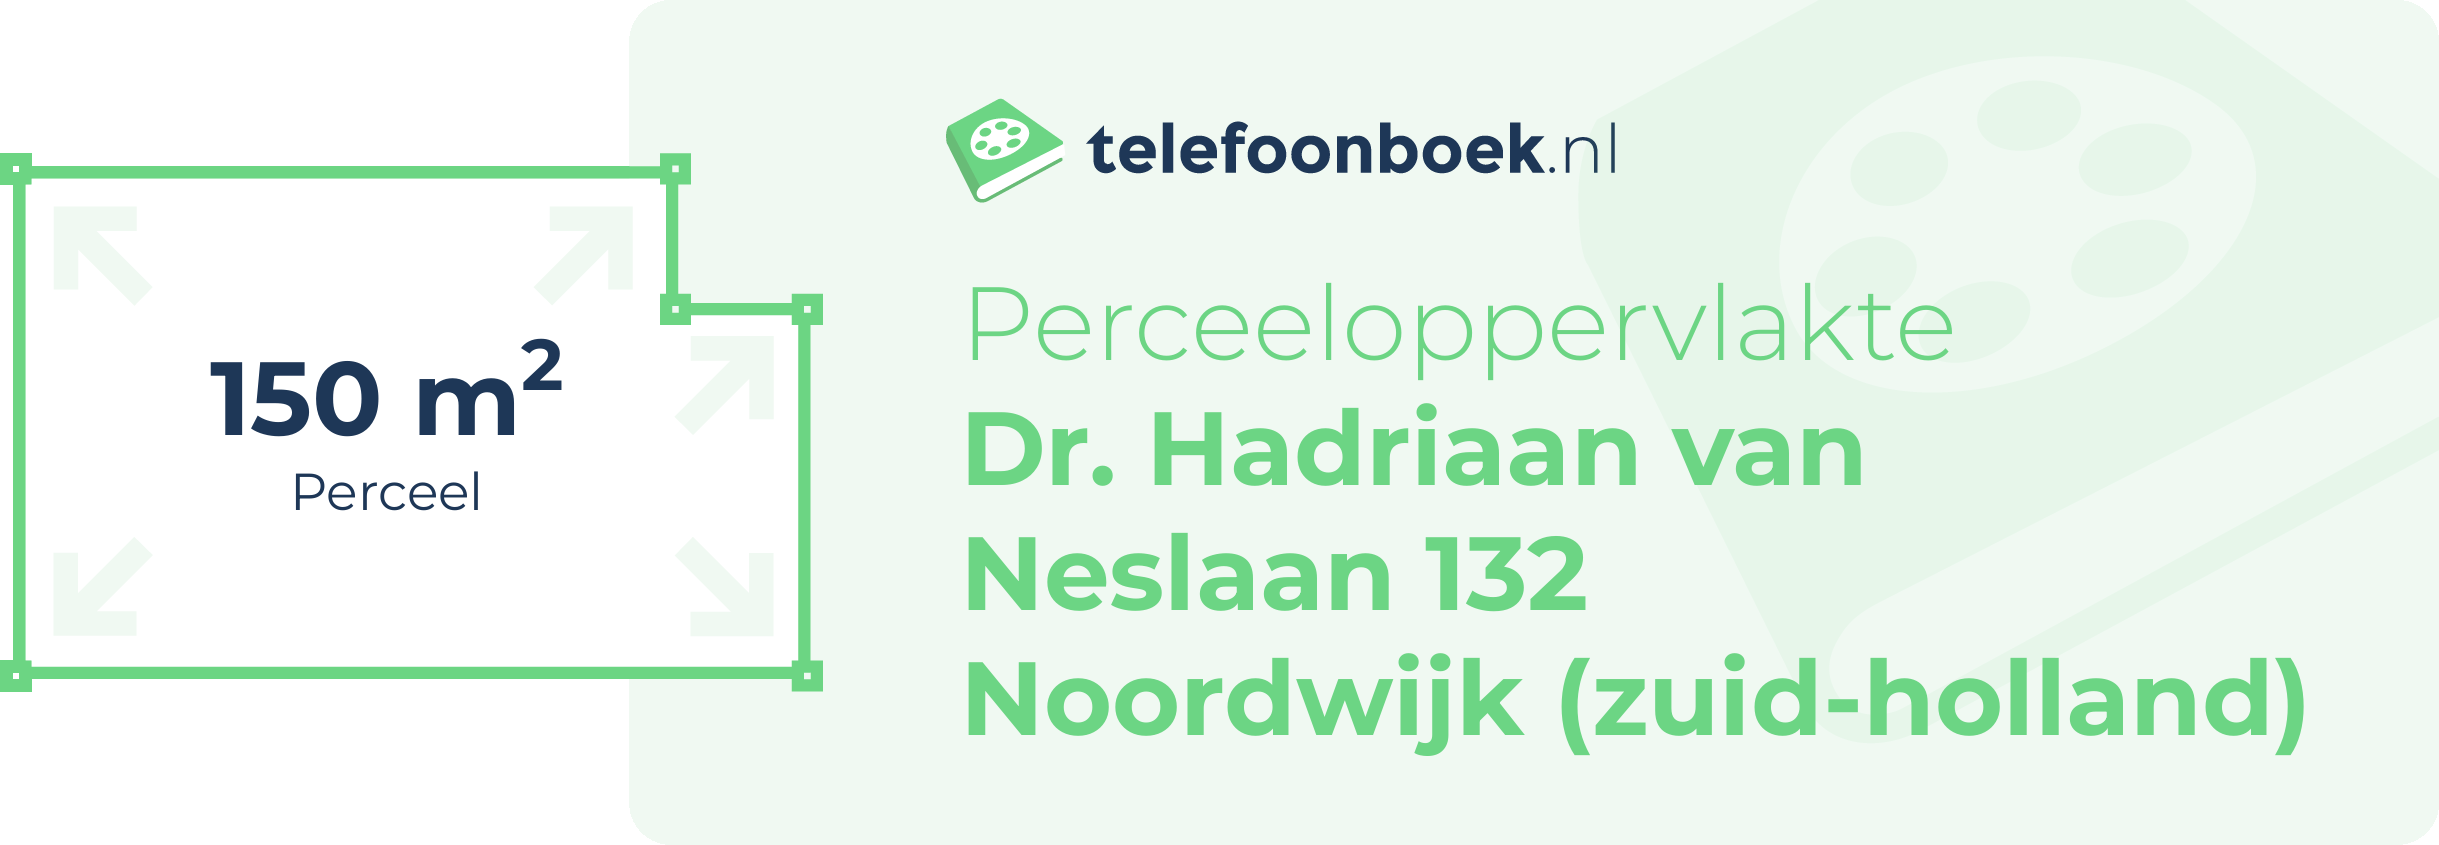 Perceeloppervlakte Dr. Hadriaan Van Neslaan 132 Noordwijk (Zuid-Holland)